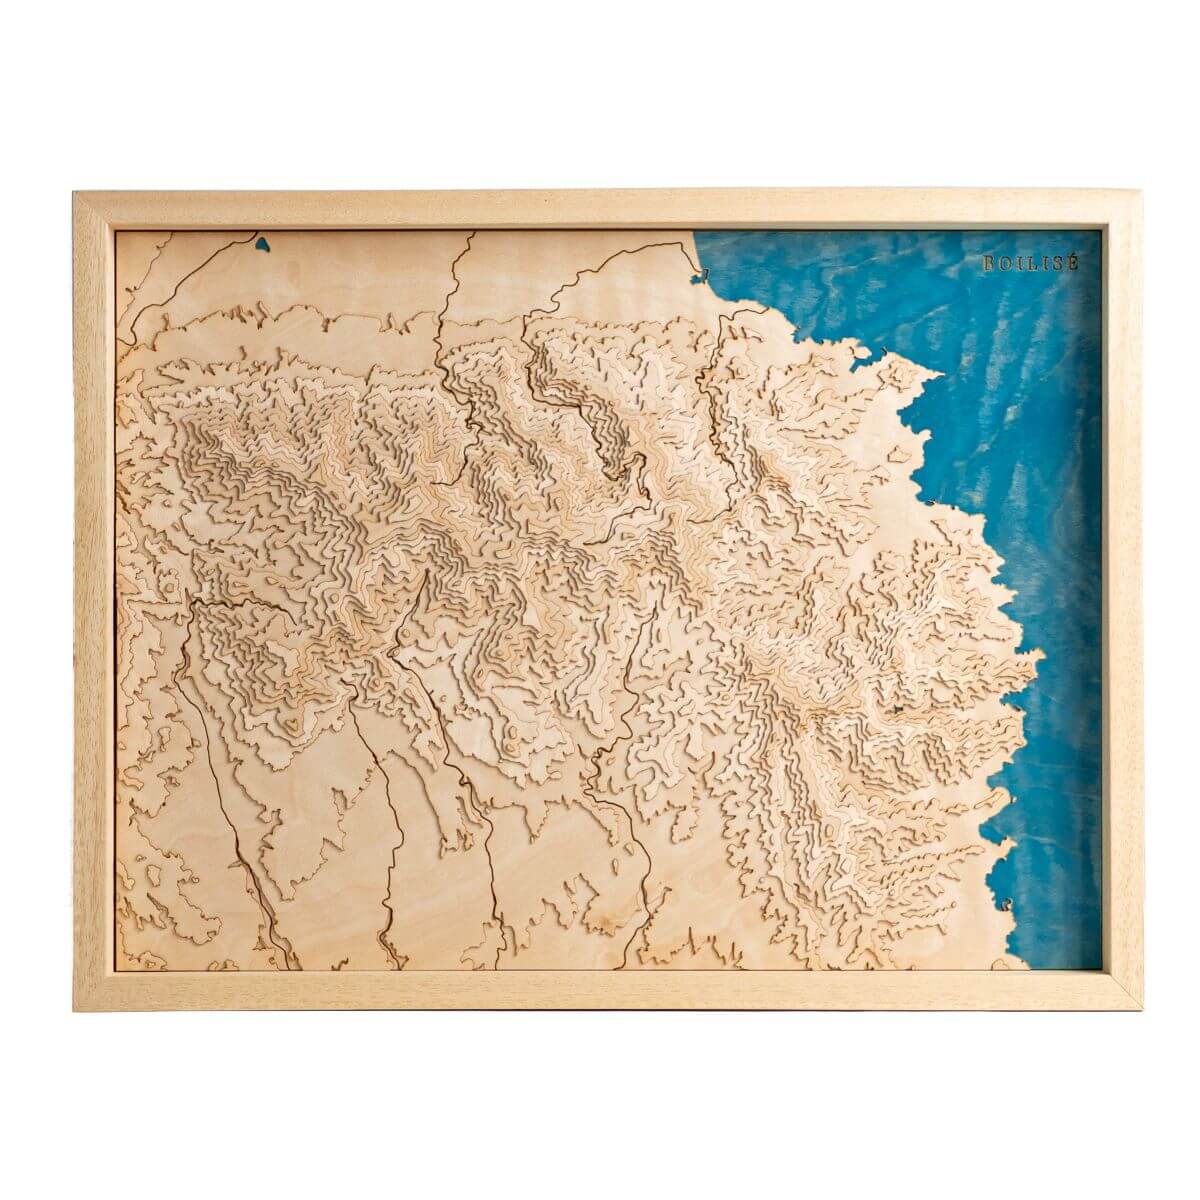 Tableau des Albères en relief avec une eau bleue marineLes Albères représentée dans une carte au style unique